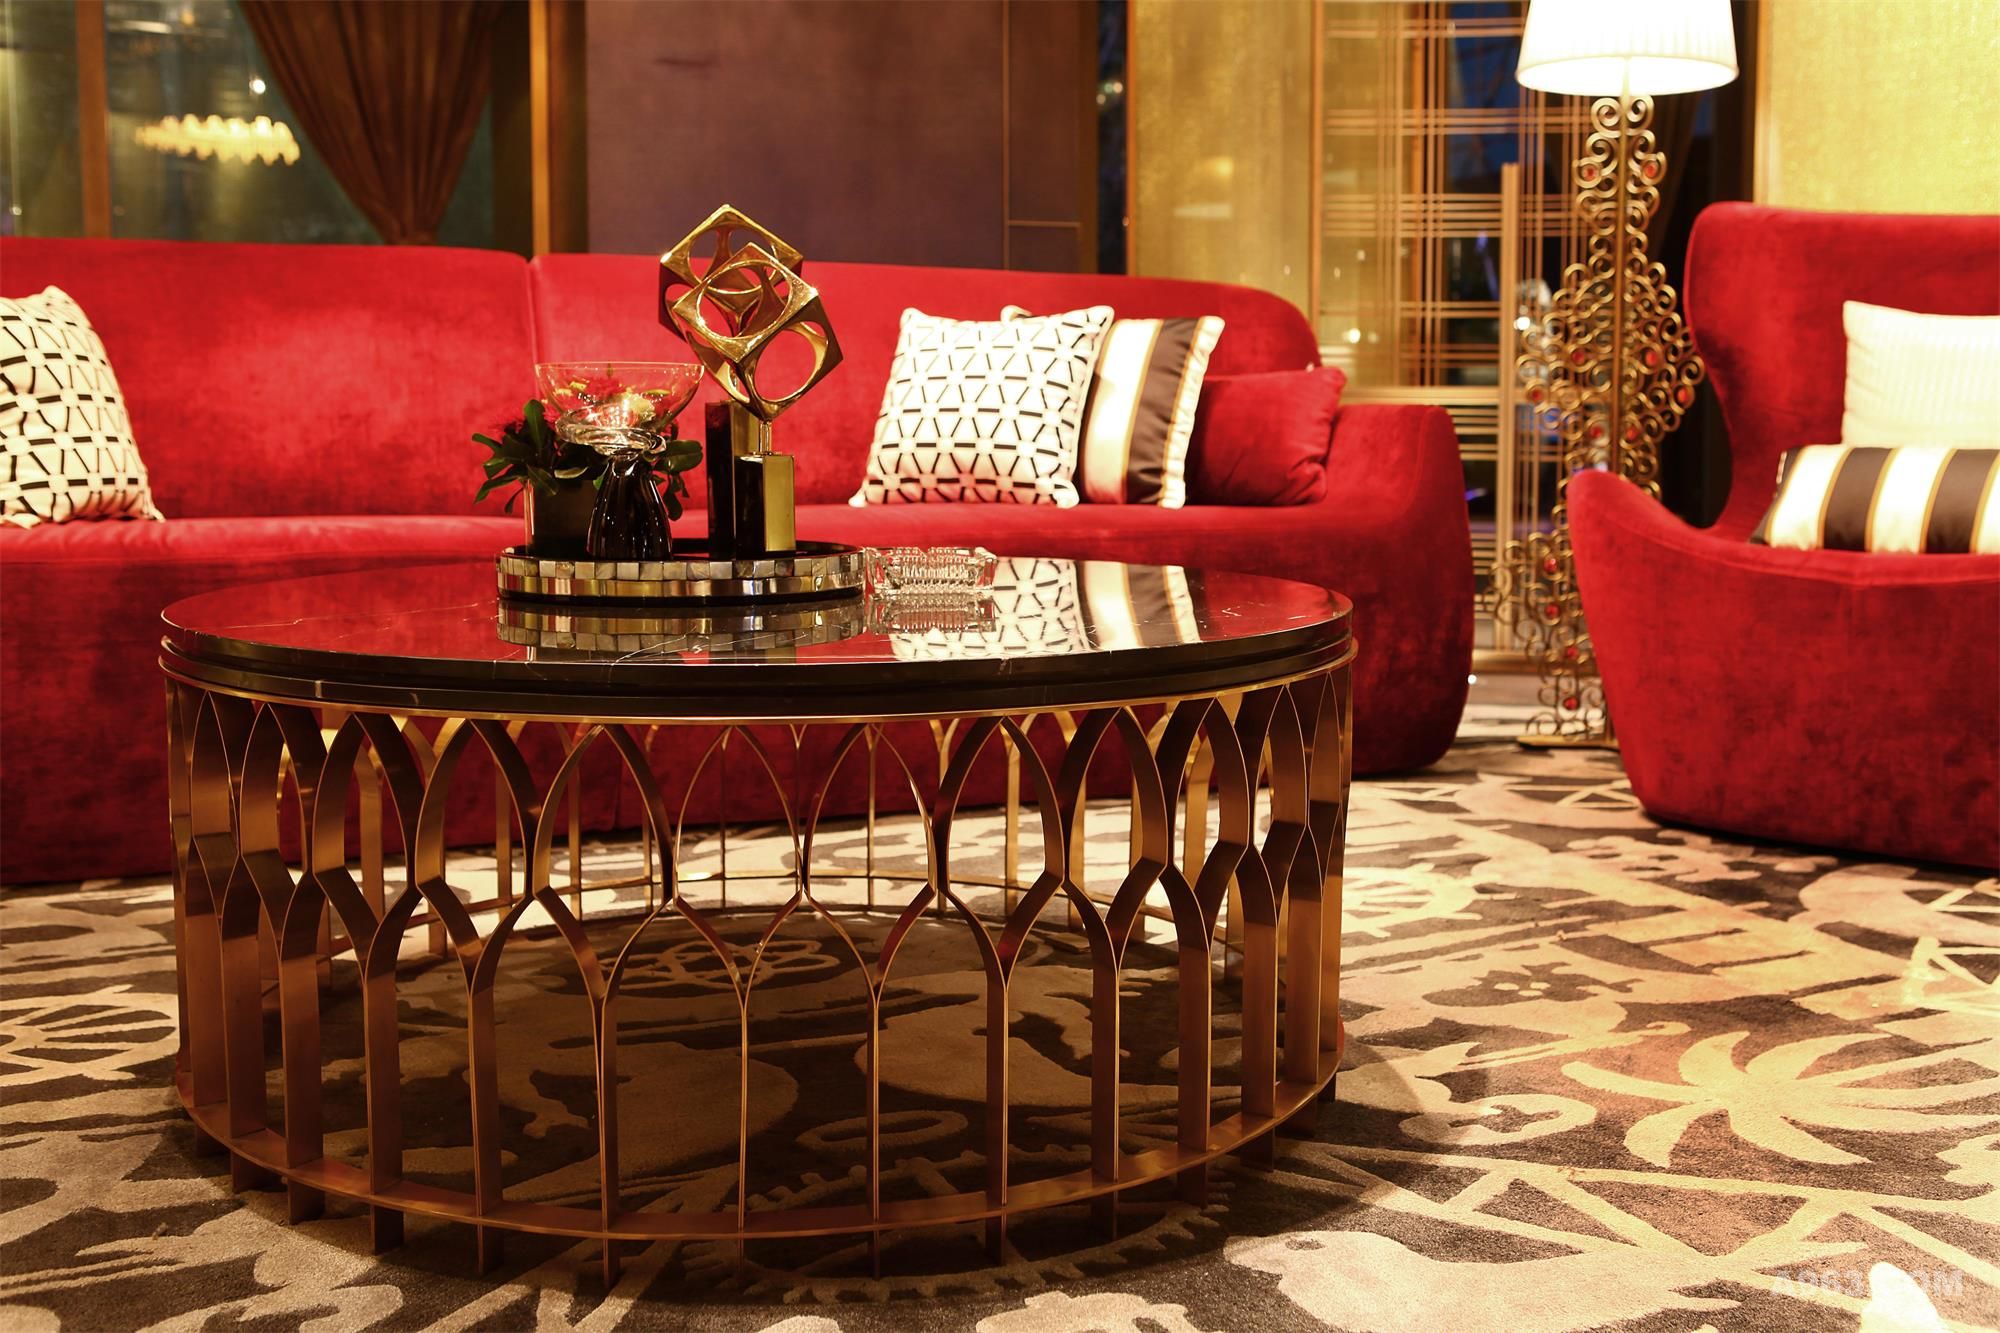 热情艳丽的大红色沙发，搭配玫瑰金色桌台，红色的绒面、玫瑰金色的金属，看似毫无关联，搭配起来却丝毫不违和，颜色与材质的碰撞成为别具特色的组合